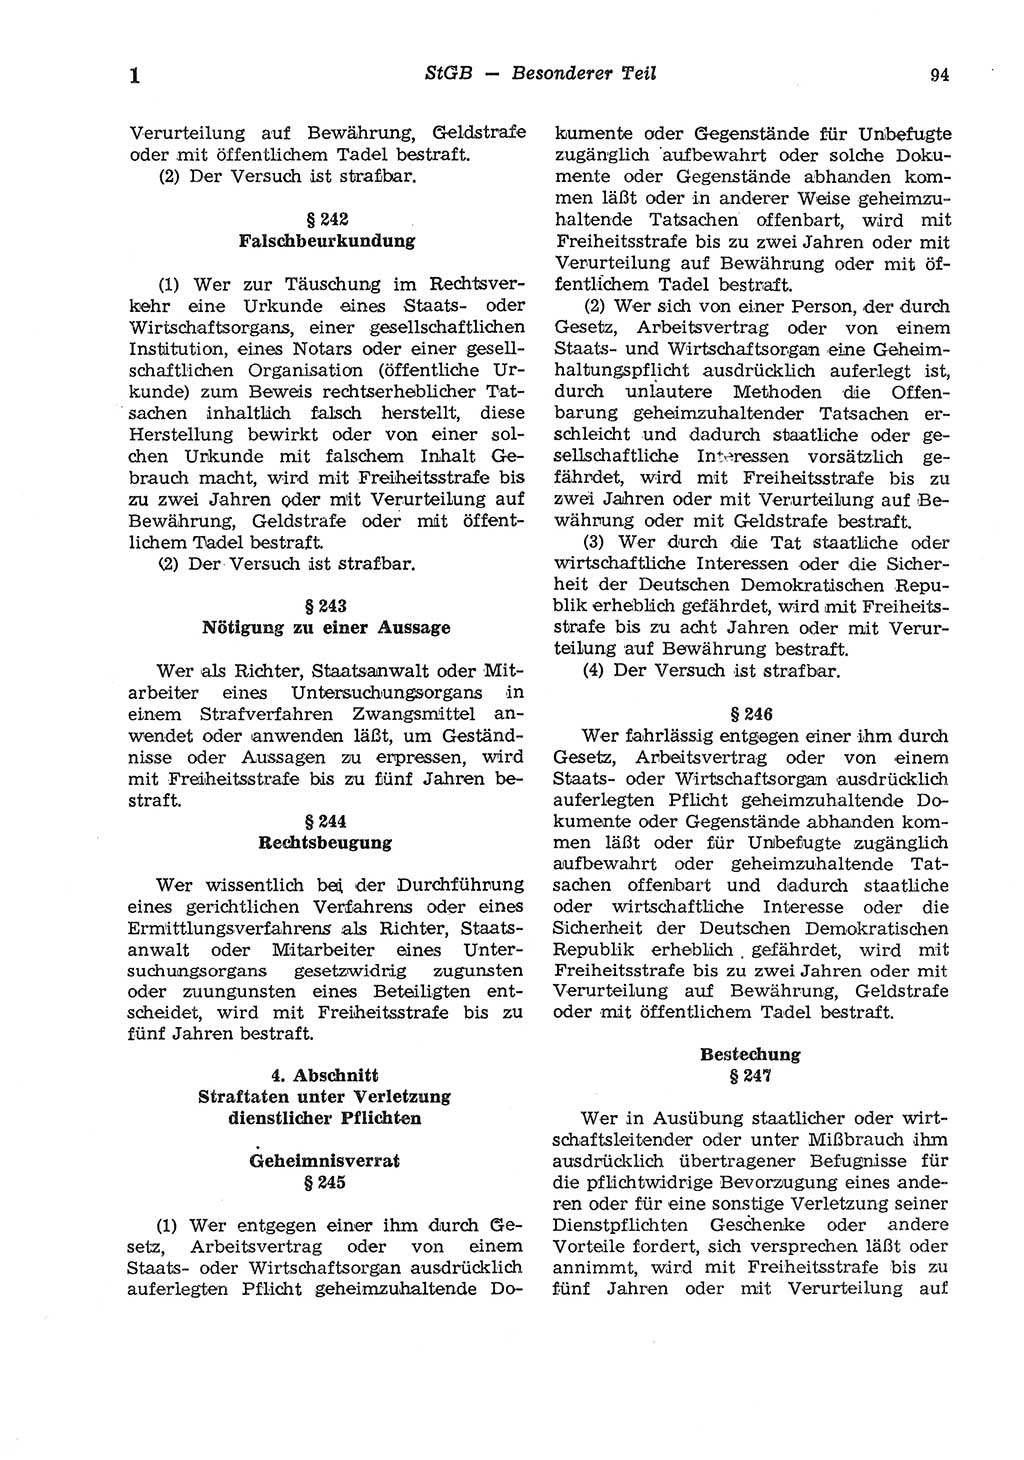 Strafgesetzbuch (StGB) der Deutschen Demokratischen Republik (DDR) und angrenzende Gesetze und Bestimmungen 1975, Seite 94 (StGB DDR Ges. Best. 1975, S. 94)